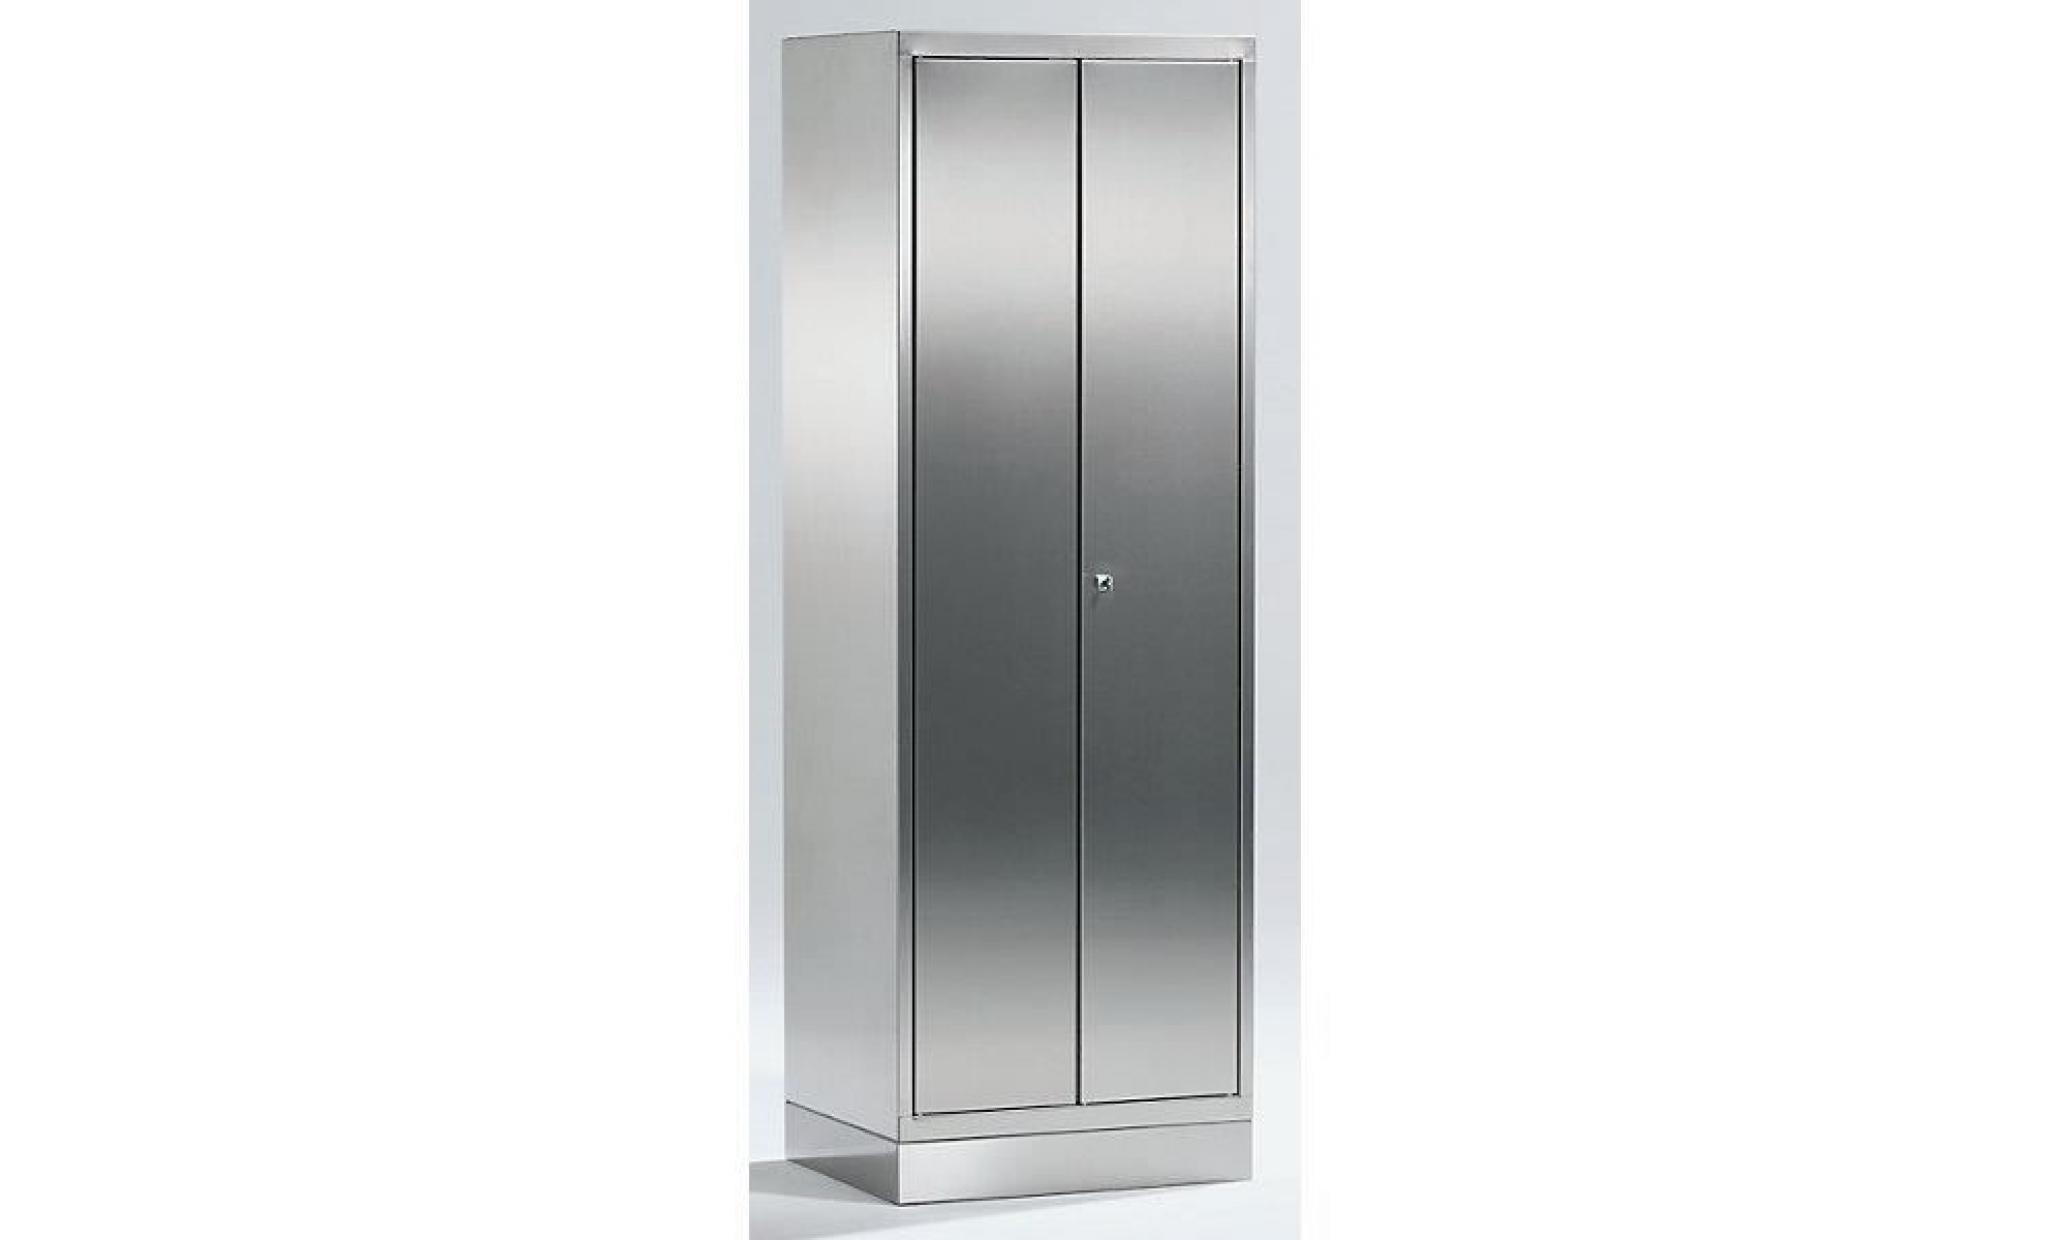 armoire universelle en inox   armoire pour dossiers/de stockage h x l x p 1800 x 600 x 500 mm   armoire armoire de vestiaire armoire pas cher